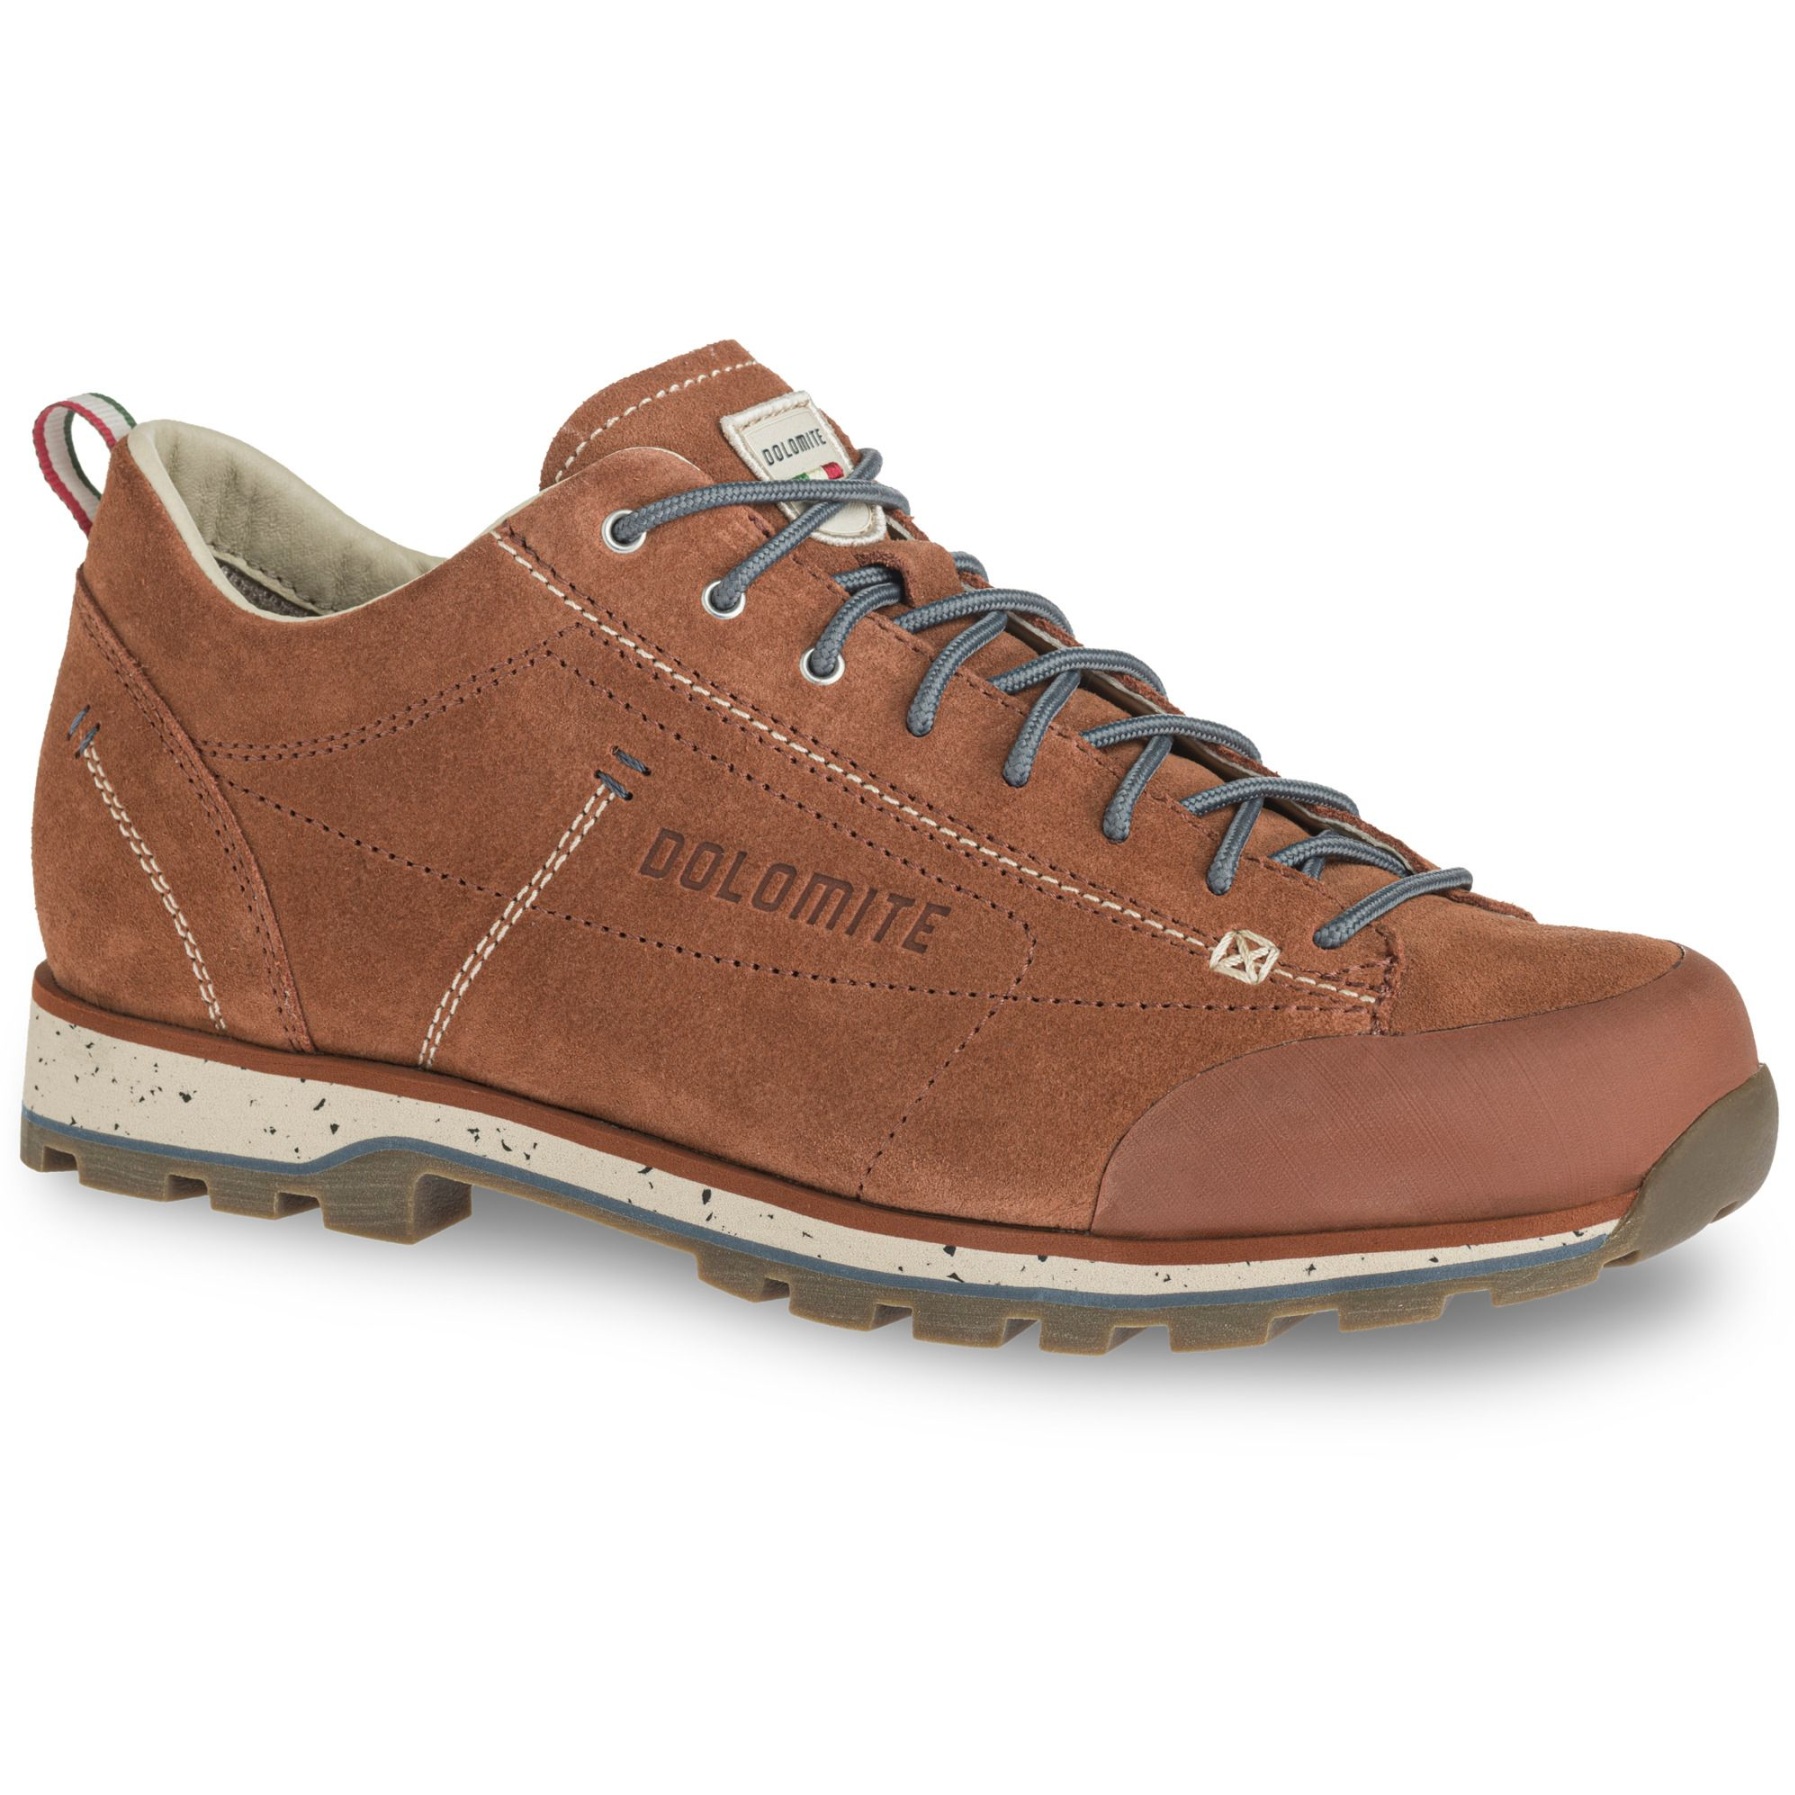 Produktbild von Dolomite 54 Low Evo Schuhe Herren - sepia brown